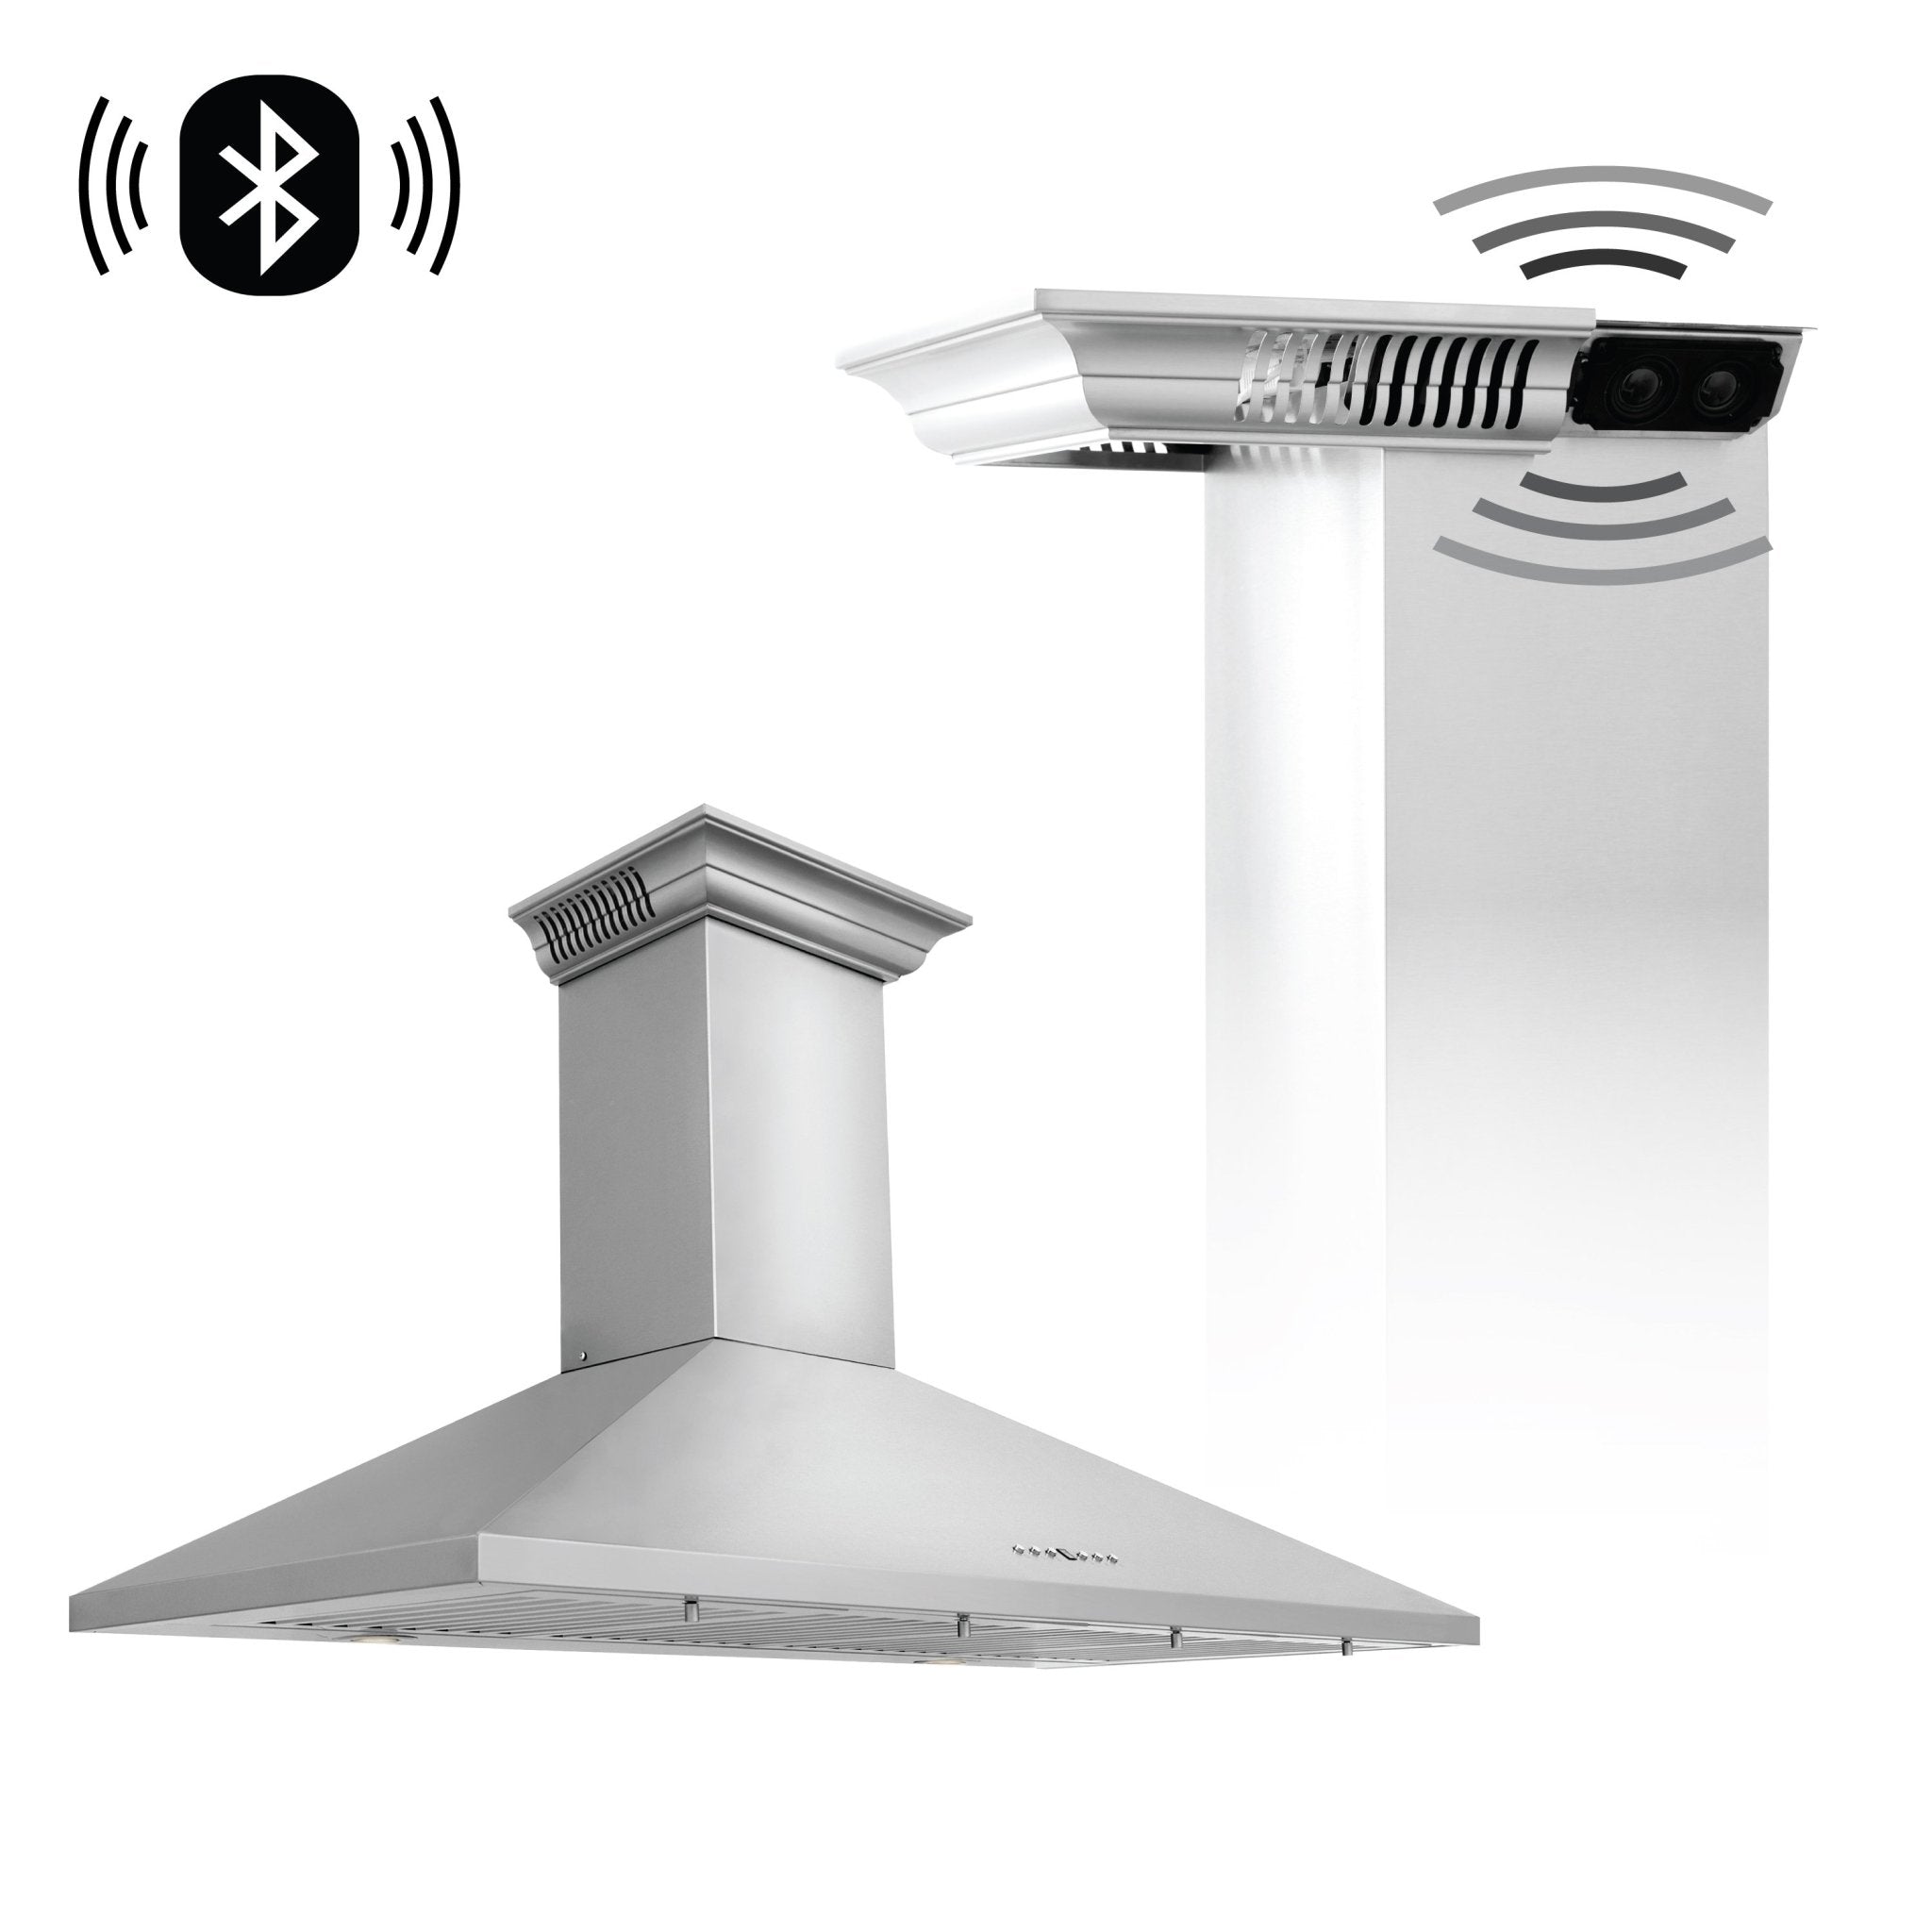 ZLINE Kitchen and Bath, ZLINE Wall Mount Range Hood In Stainless Steel With Built-In CrownSound® Bluetooth Speakers (KL2CRN-BT), KL2CRN-BT-42,